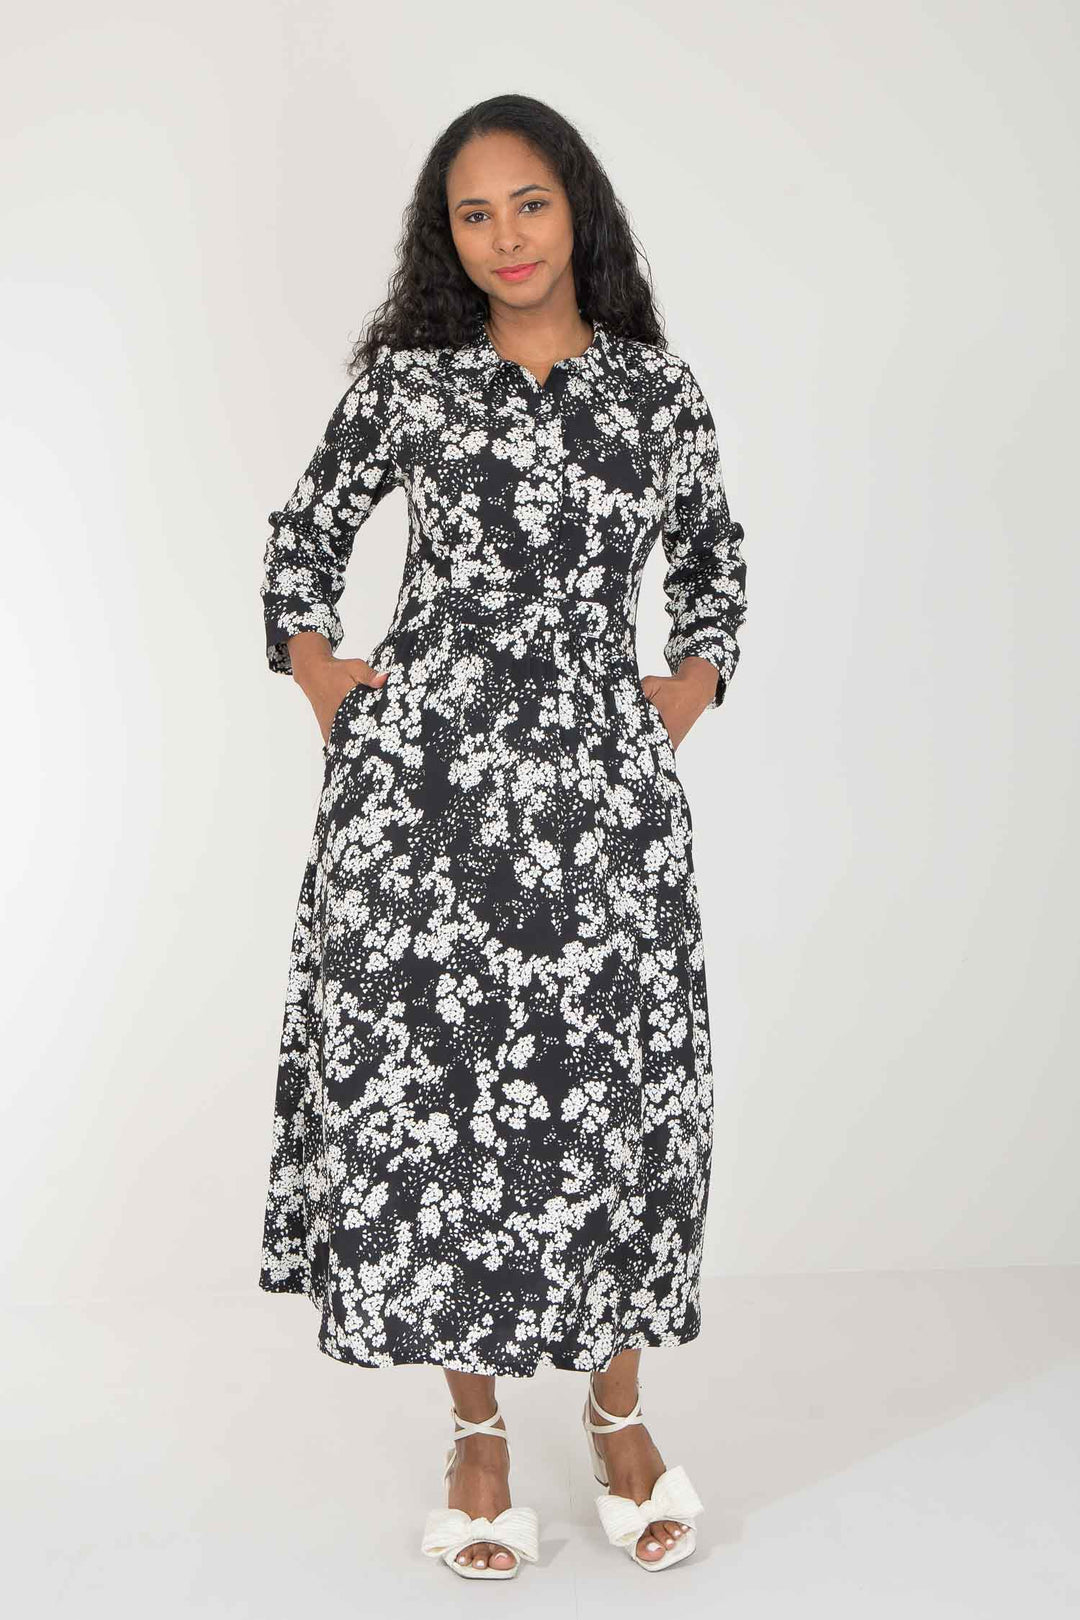 Pure EcoVero woven viscose midi dress - Black Flower- Svart og hvit mønstret legglang skjortekjole 